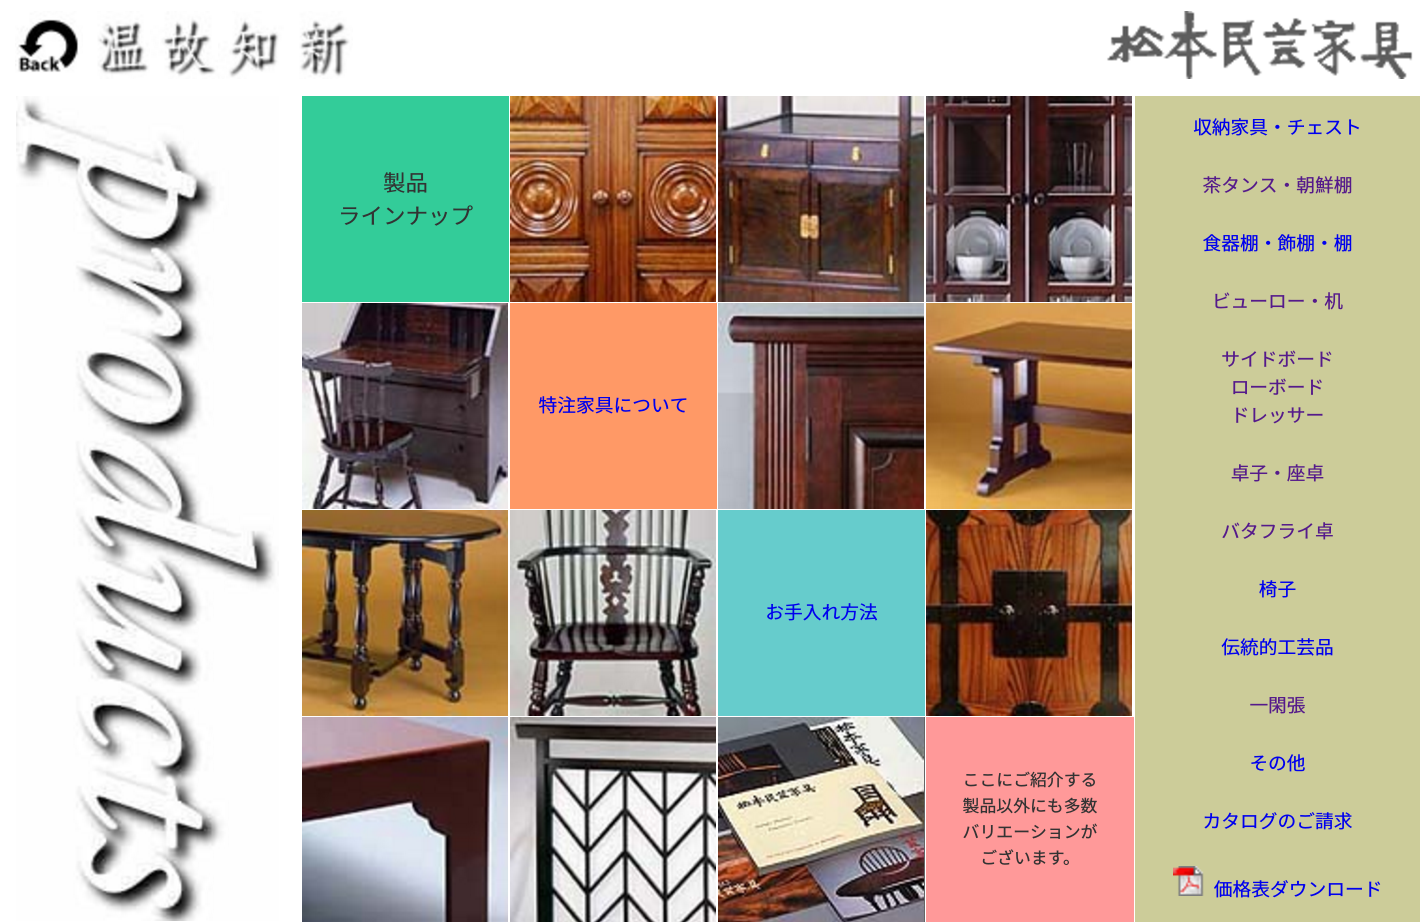 松本民芸家具の買取は「わかる」ショップで。おすすめ買取店